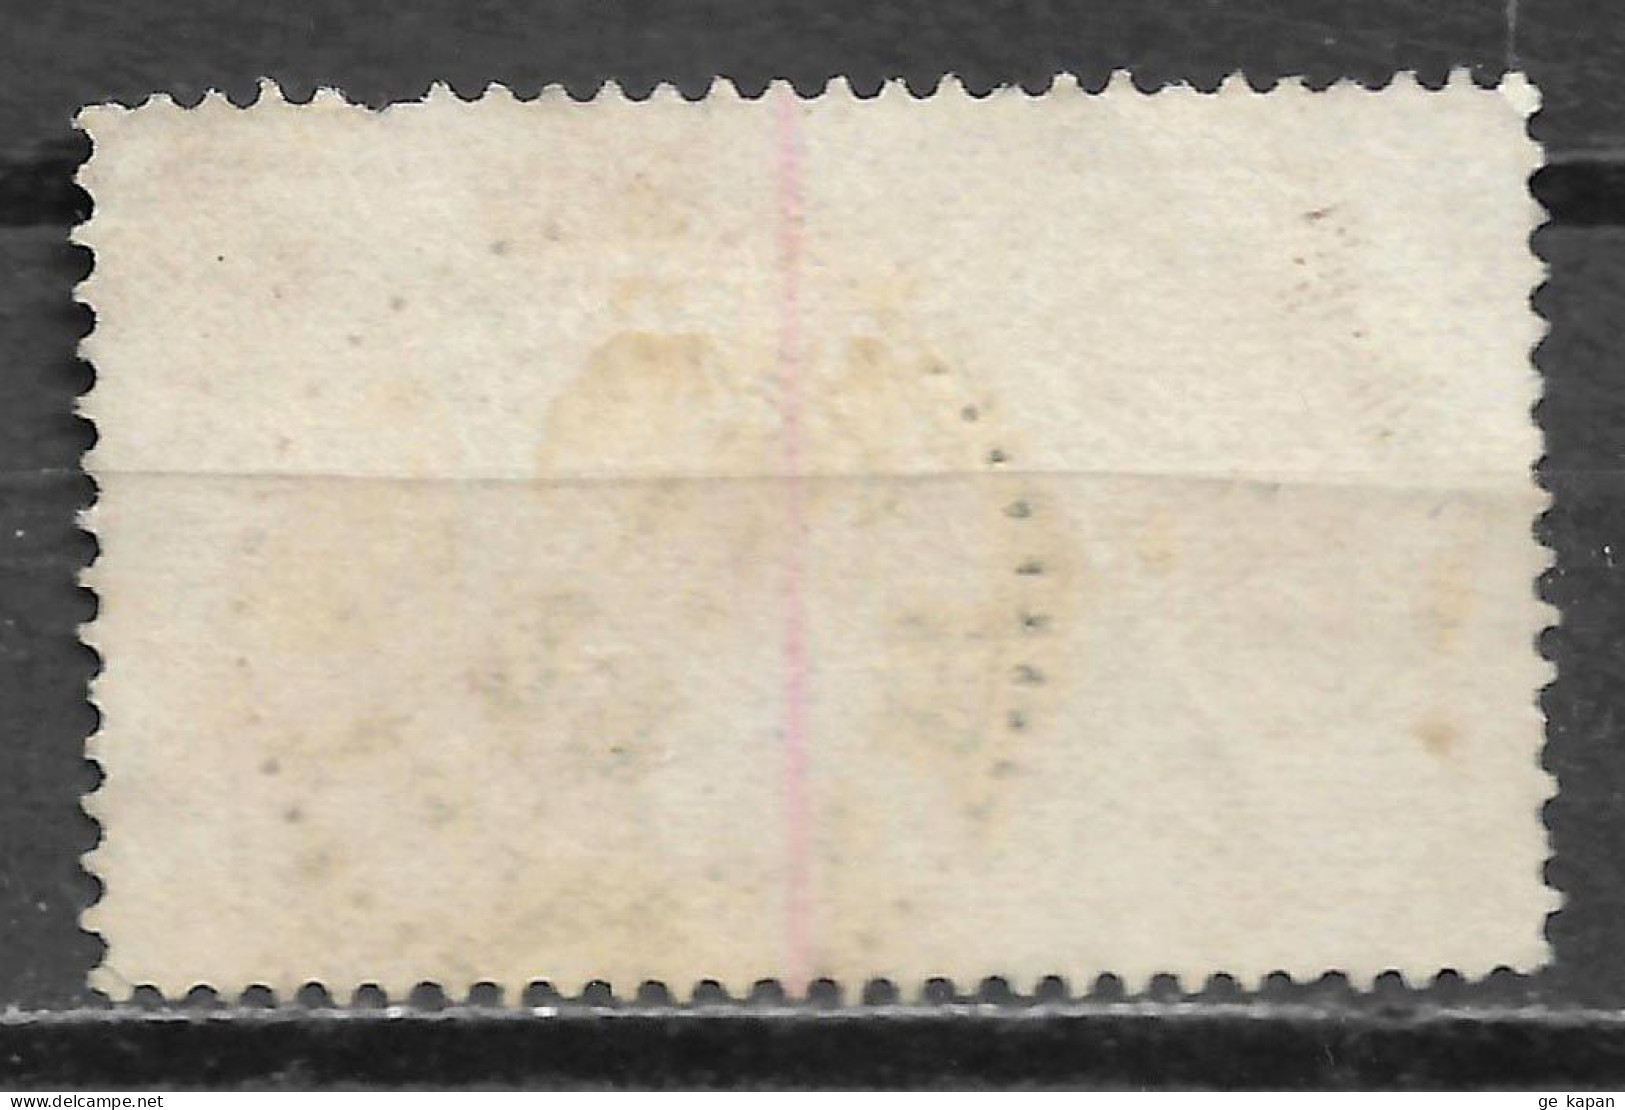 1881 SWEDEN Official USED STAMP Perf.13 (Scott # O21a) CV $22.50 - Dienstmarken